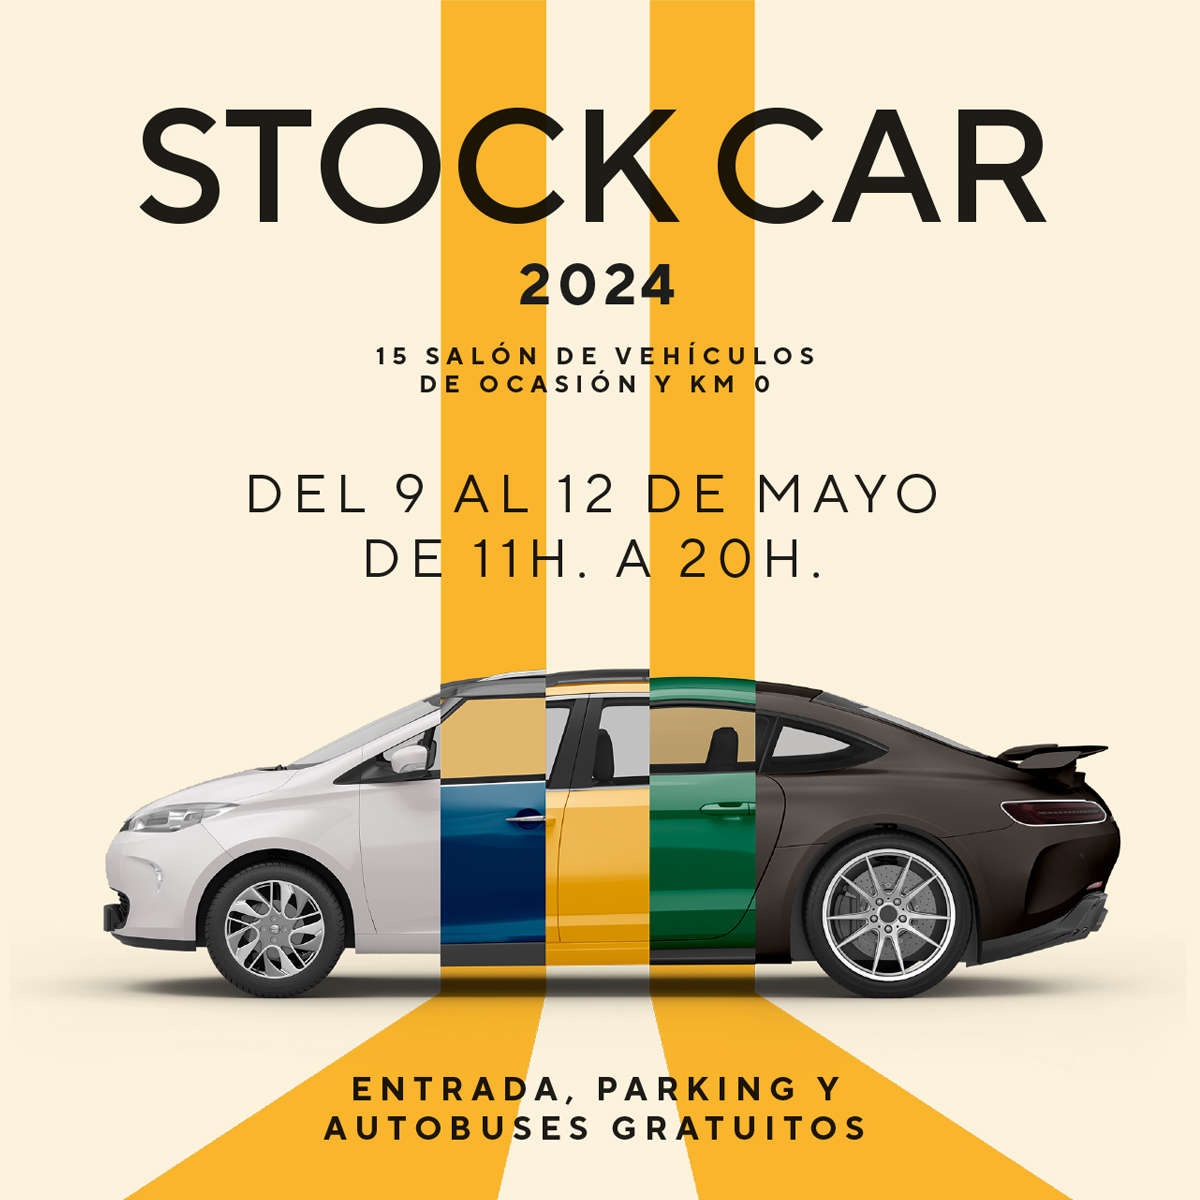 ¡Vuelve STOCK-CAR 2024 con una imagen renovada y una gran oferta de vehículos!